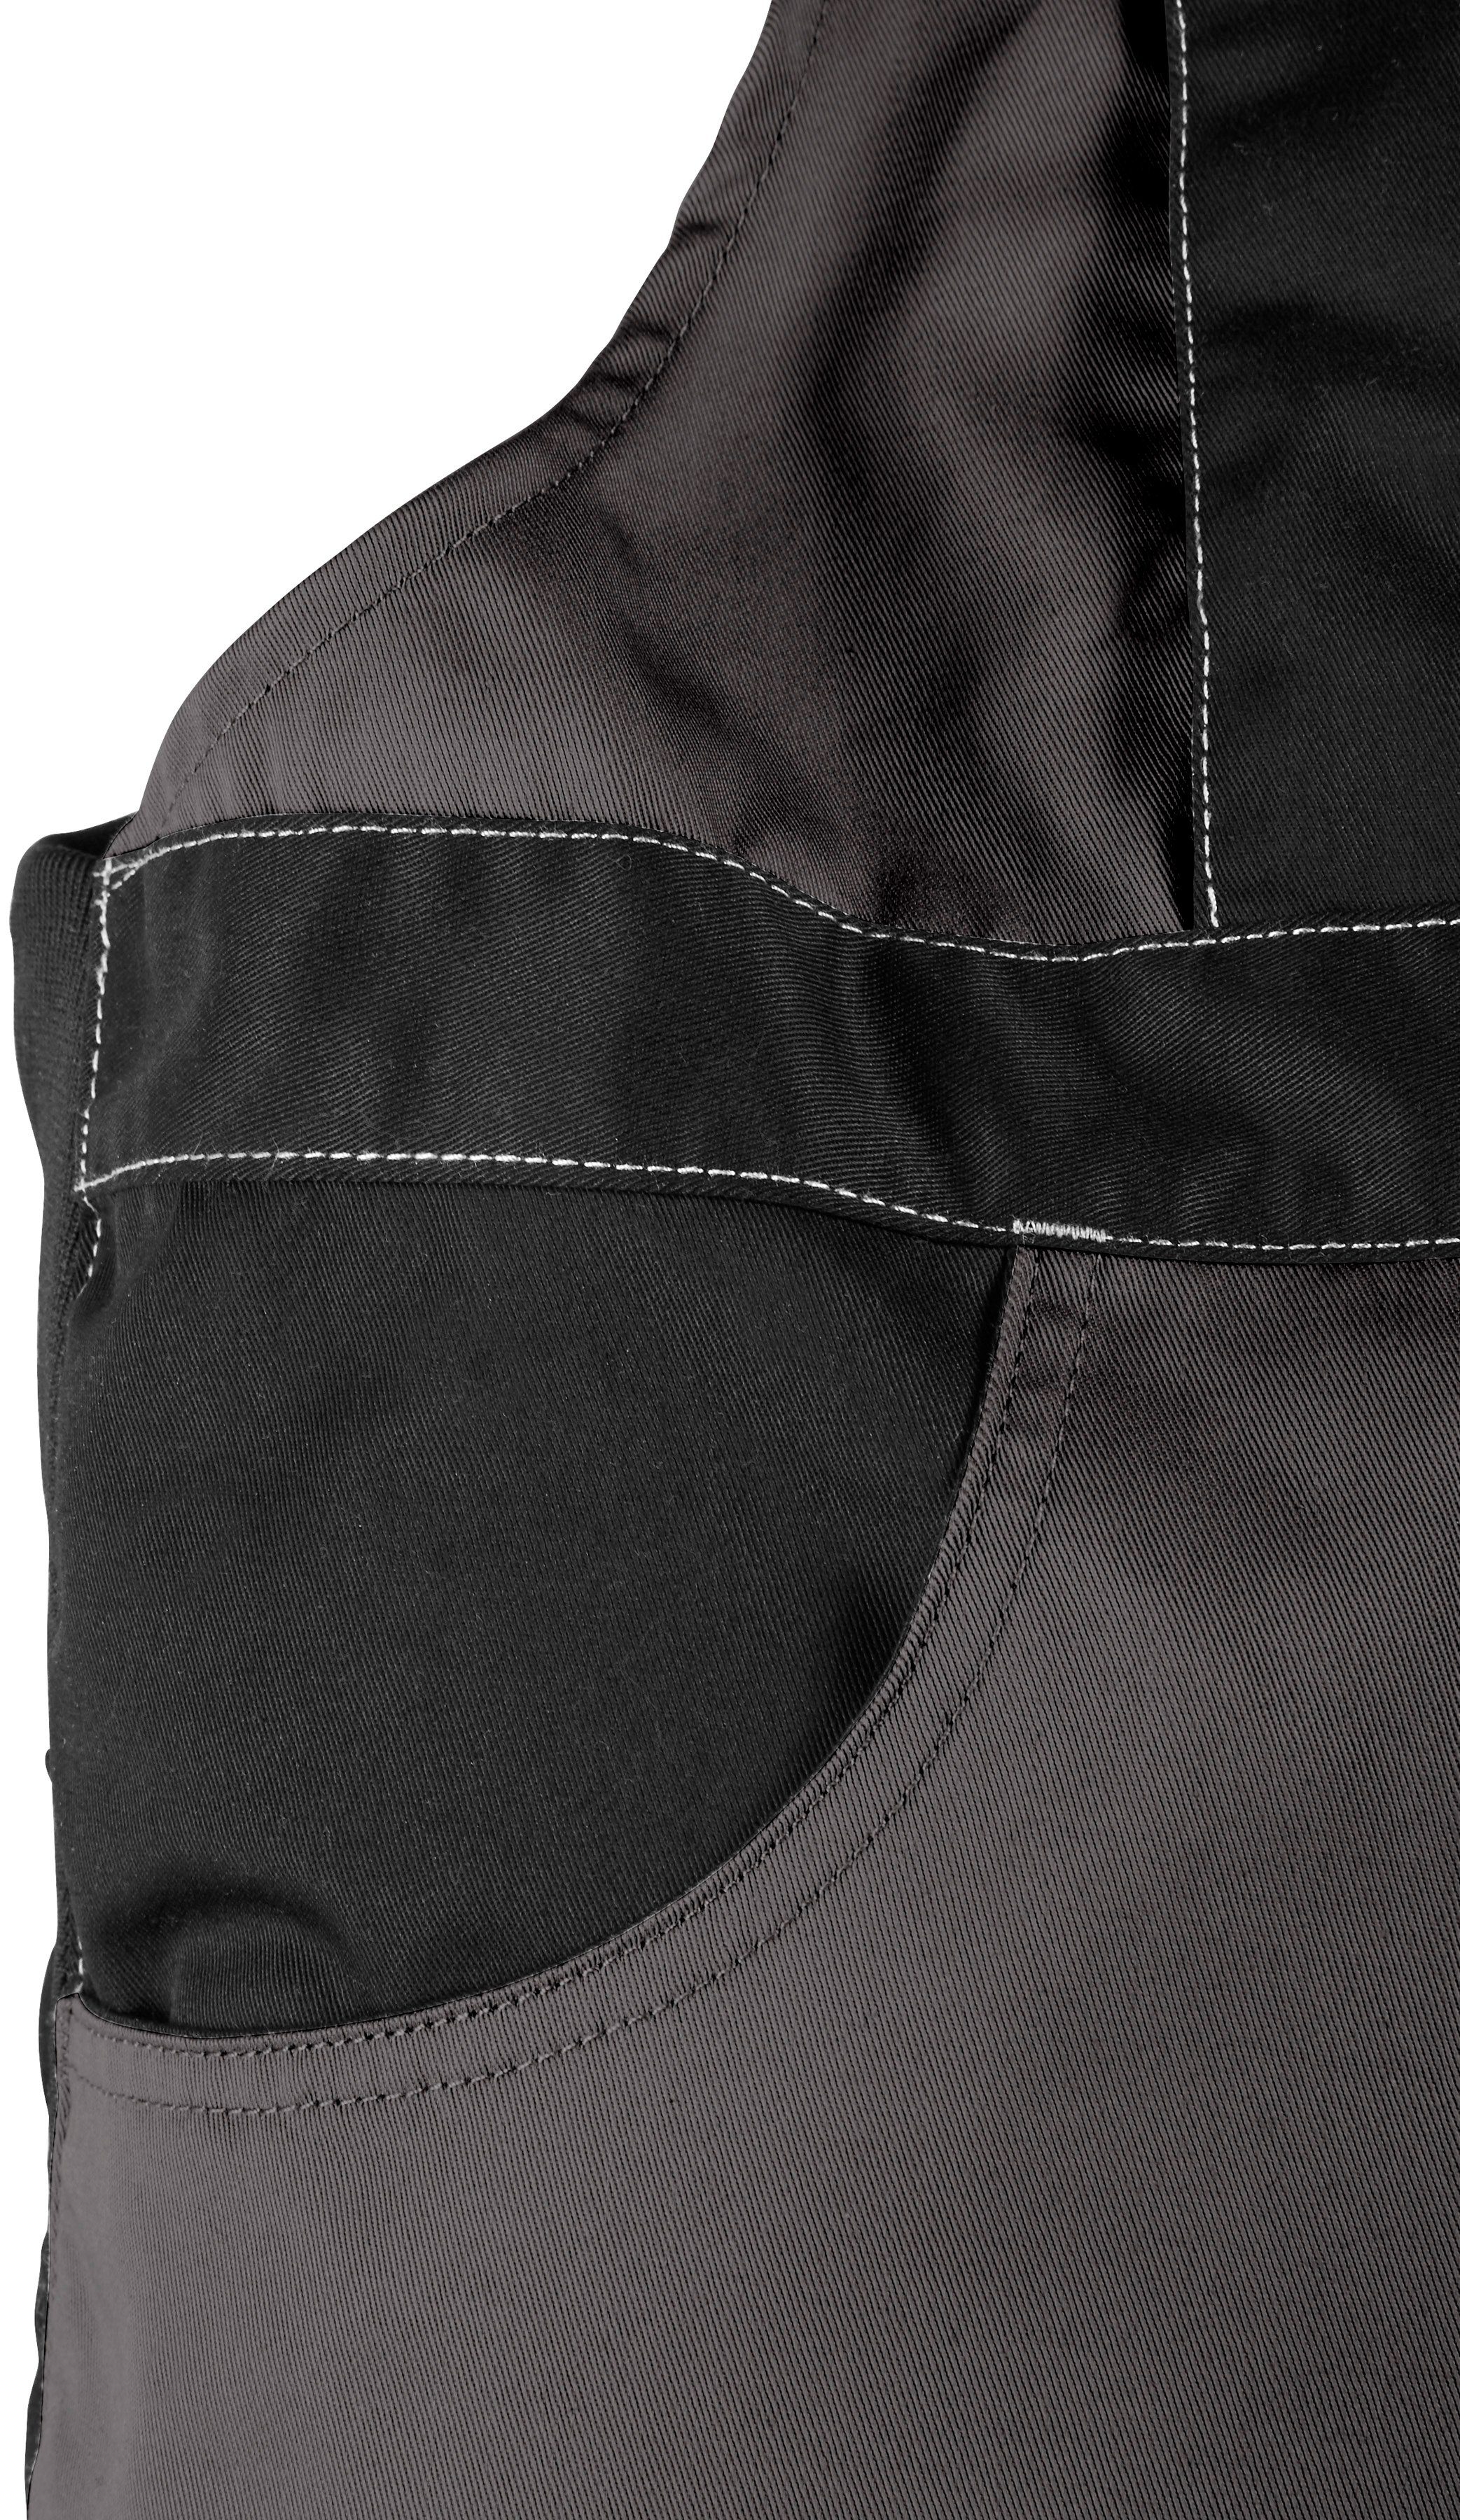 Northern Country Latzhose grau-schwarz Kniebereich, robust, Bund, Taschen mit Worker verstärktem 11 mit dehnbarer